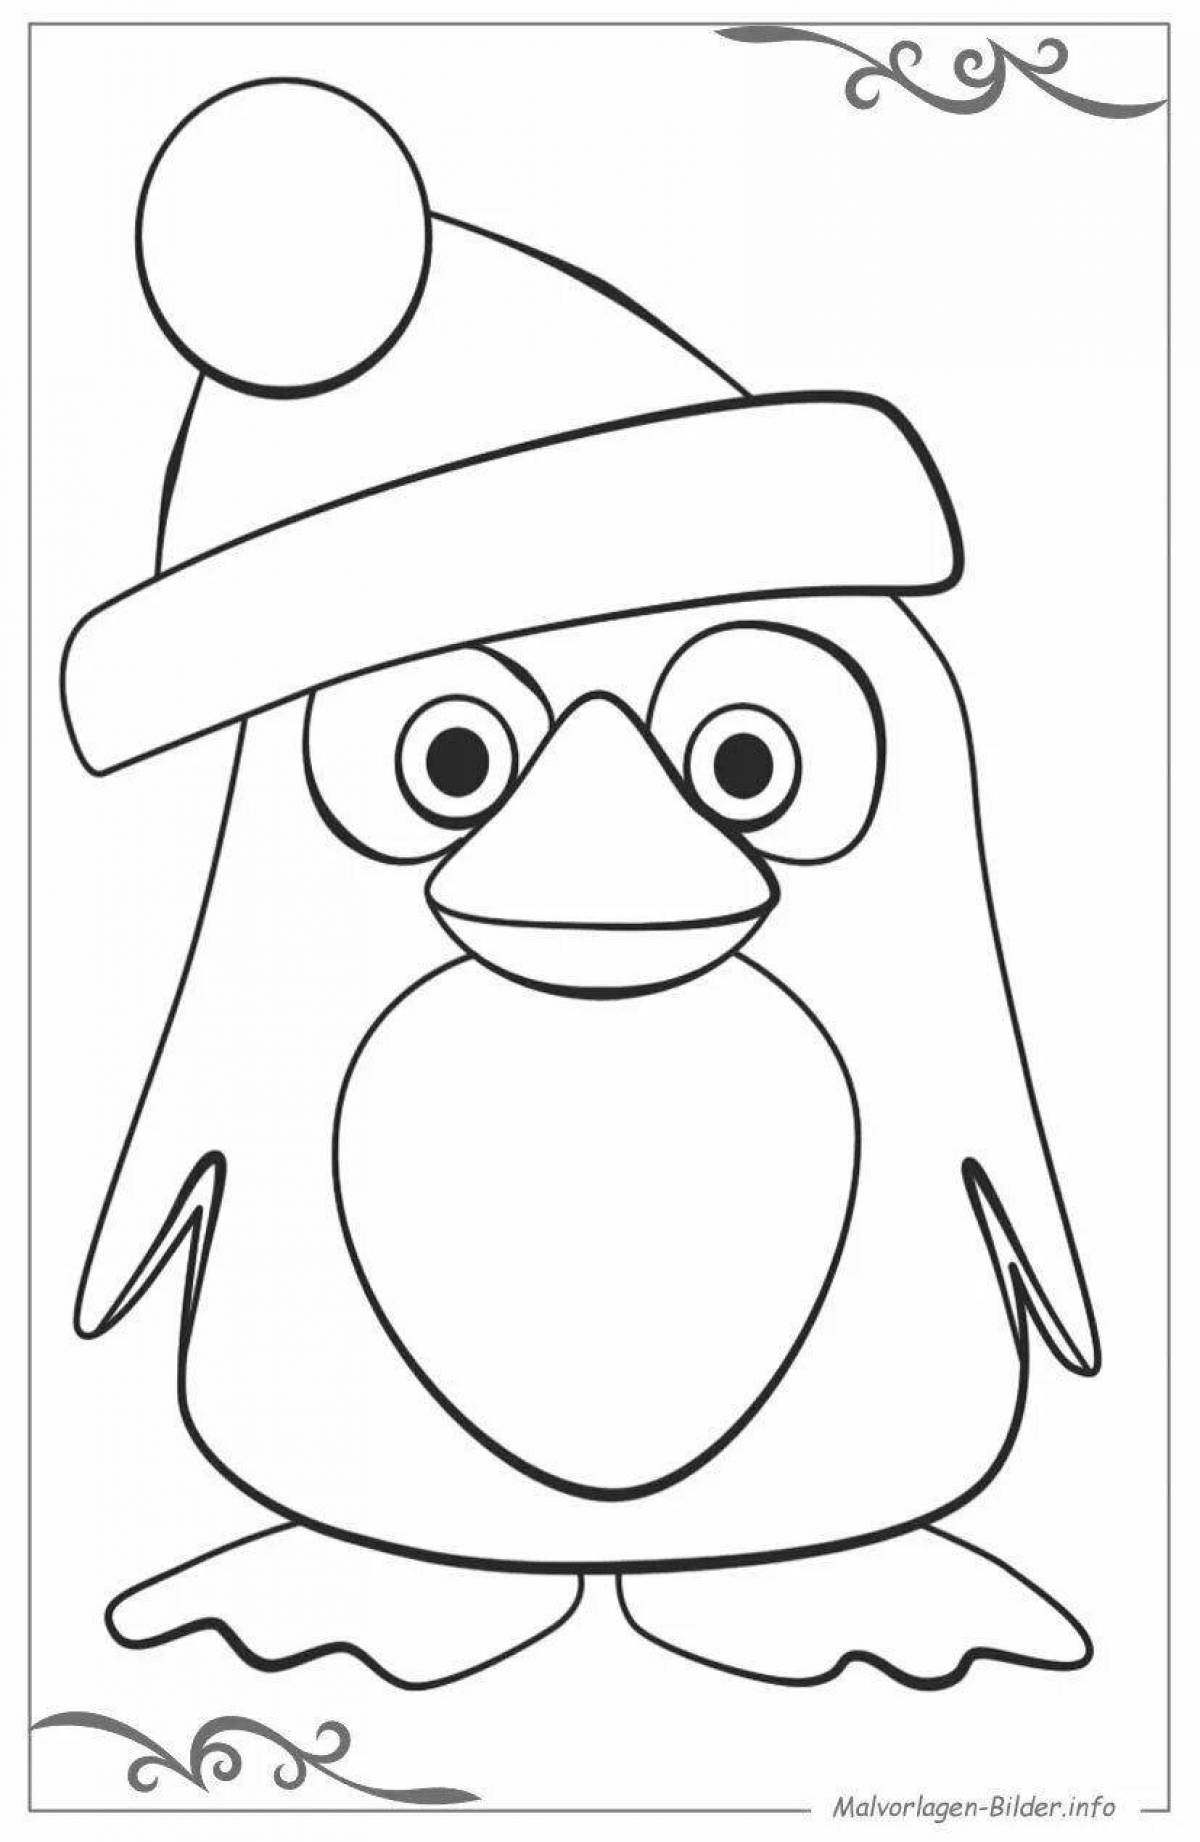 Пингвинчик раскраска для детей